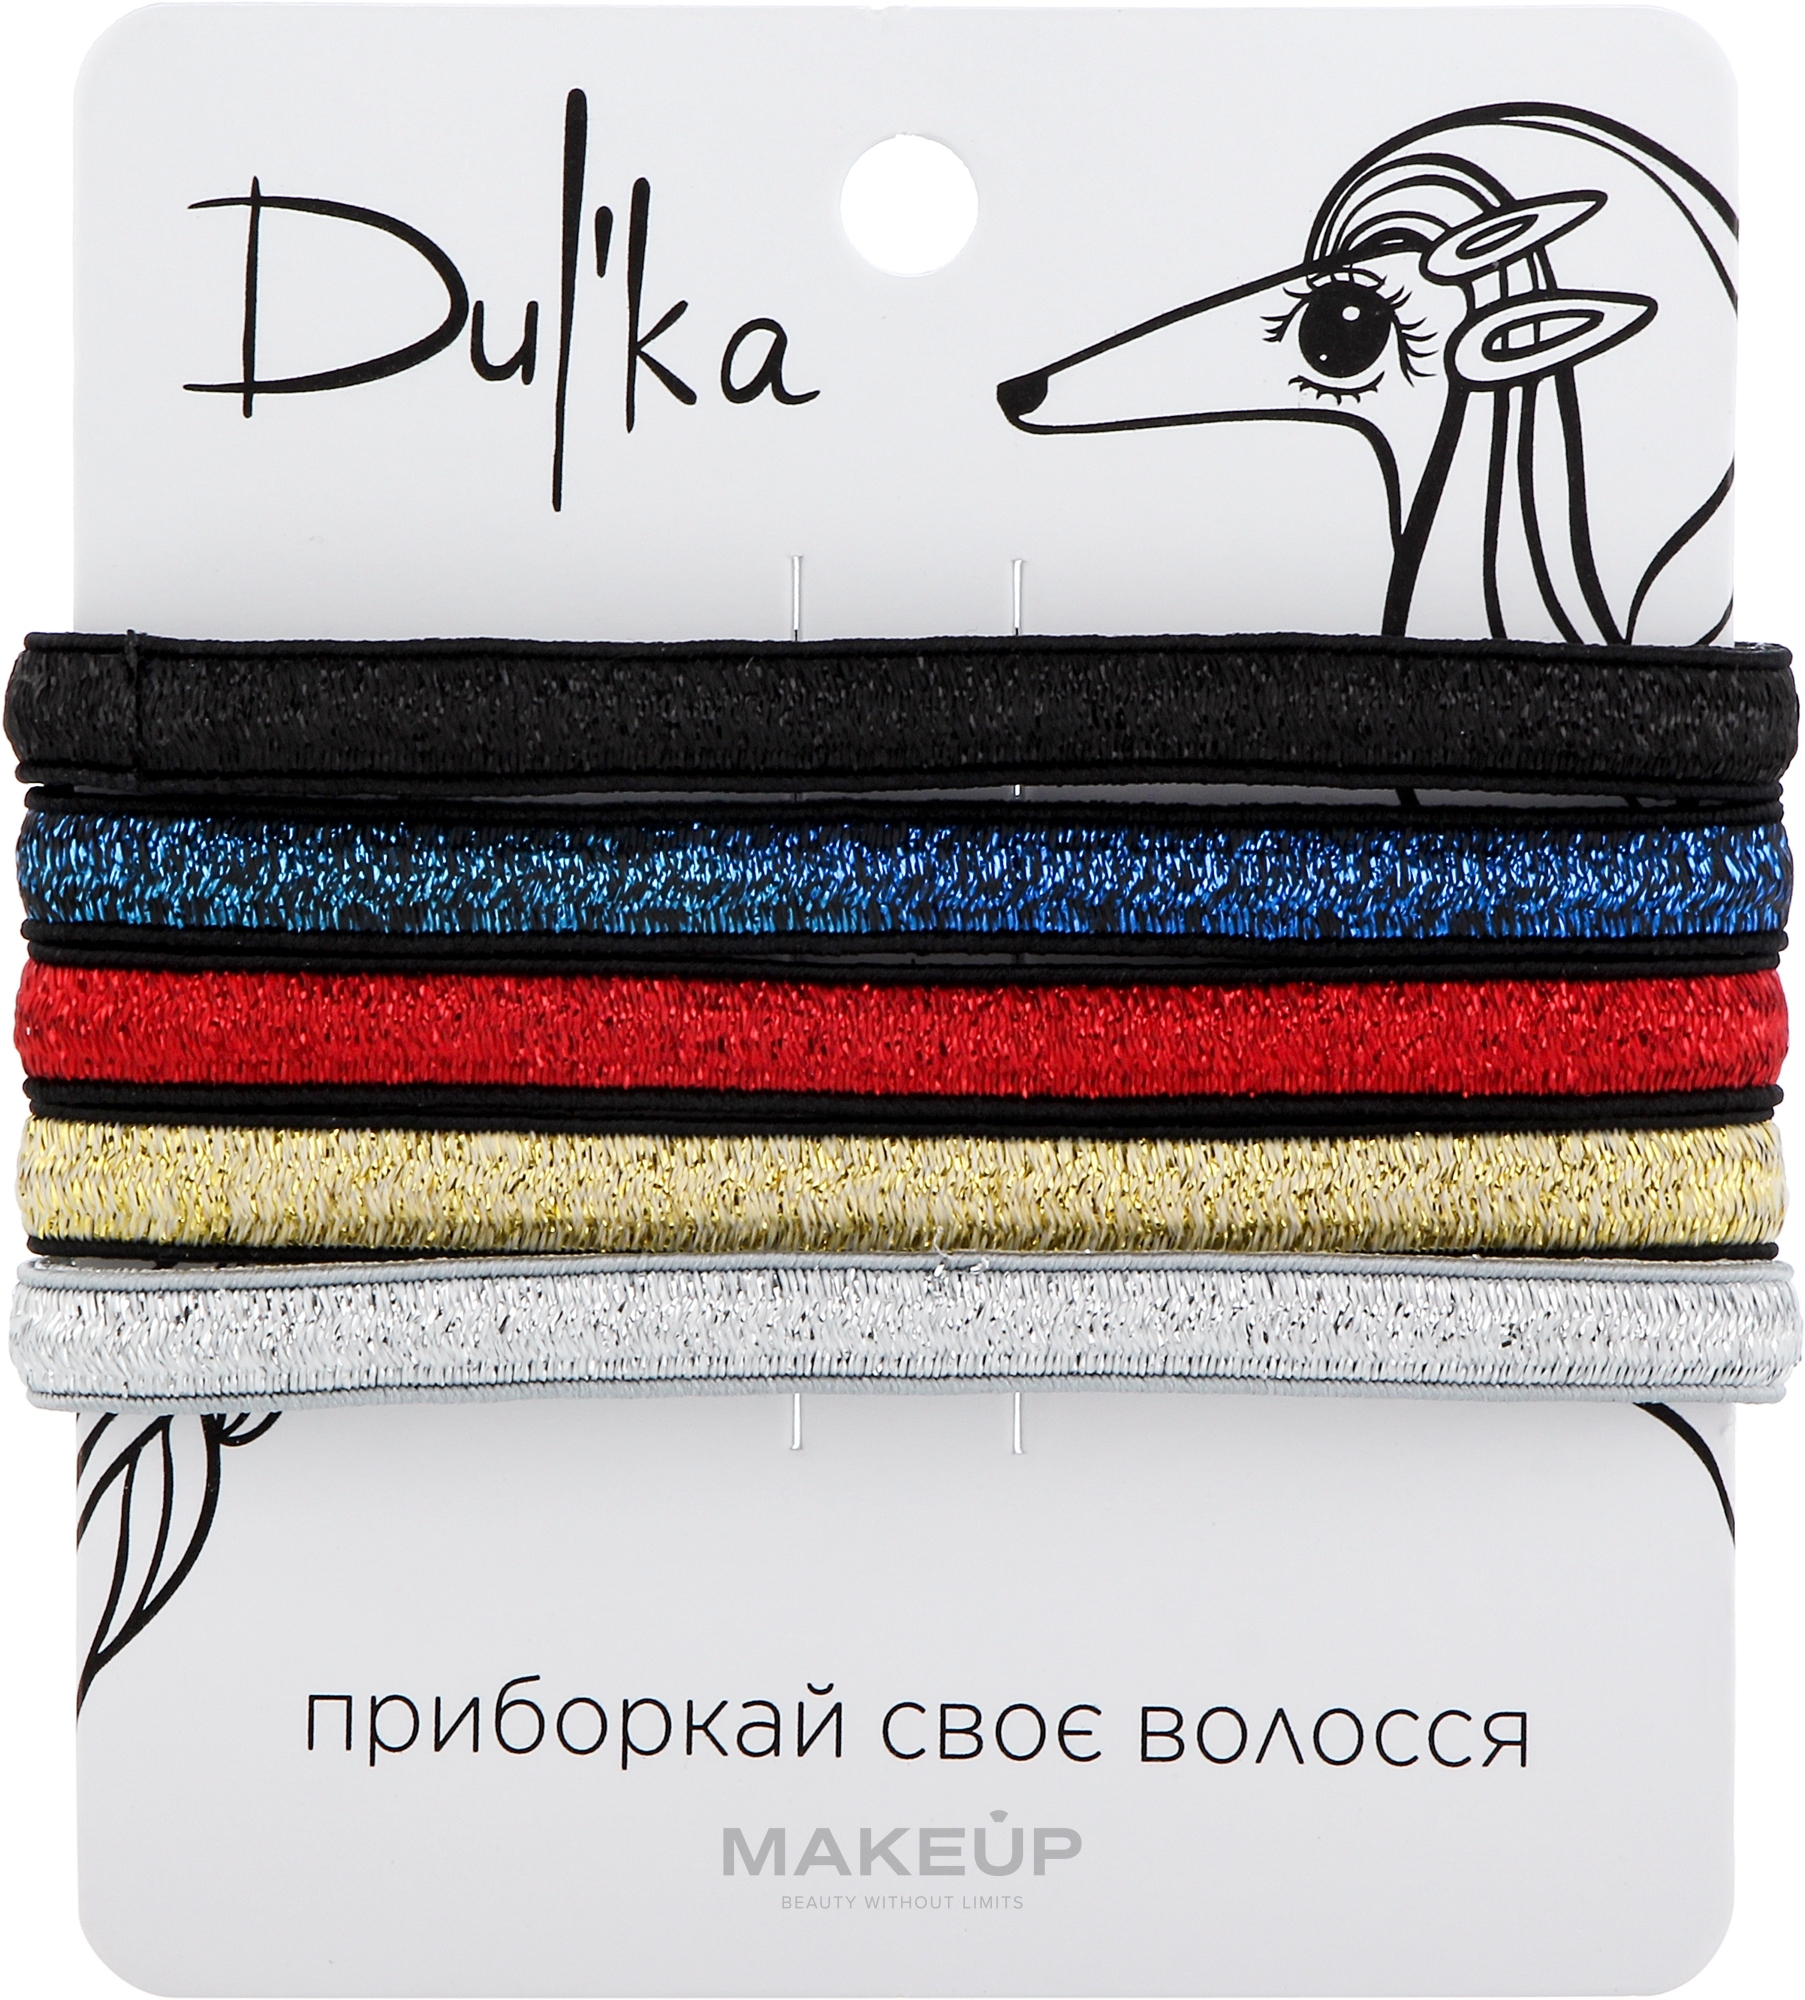 Набор разноцветных резинок для волос UH717759, 5 шт - Dulka  — фото 5шт